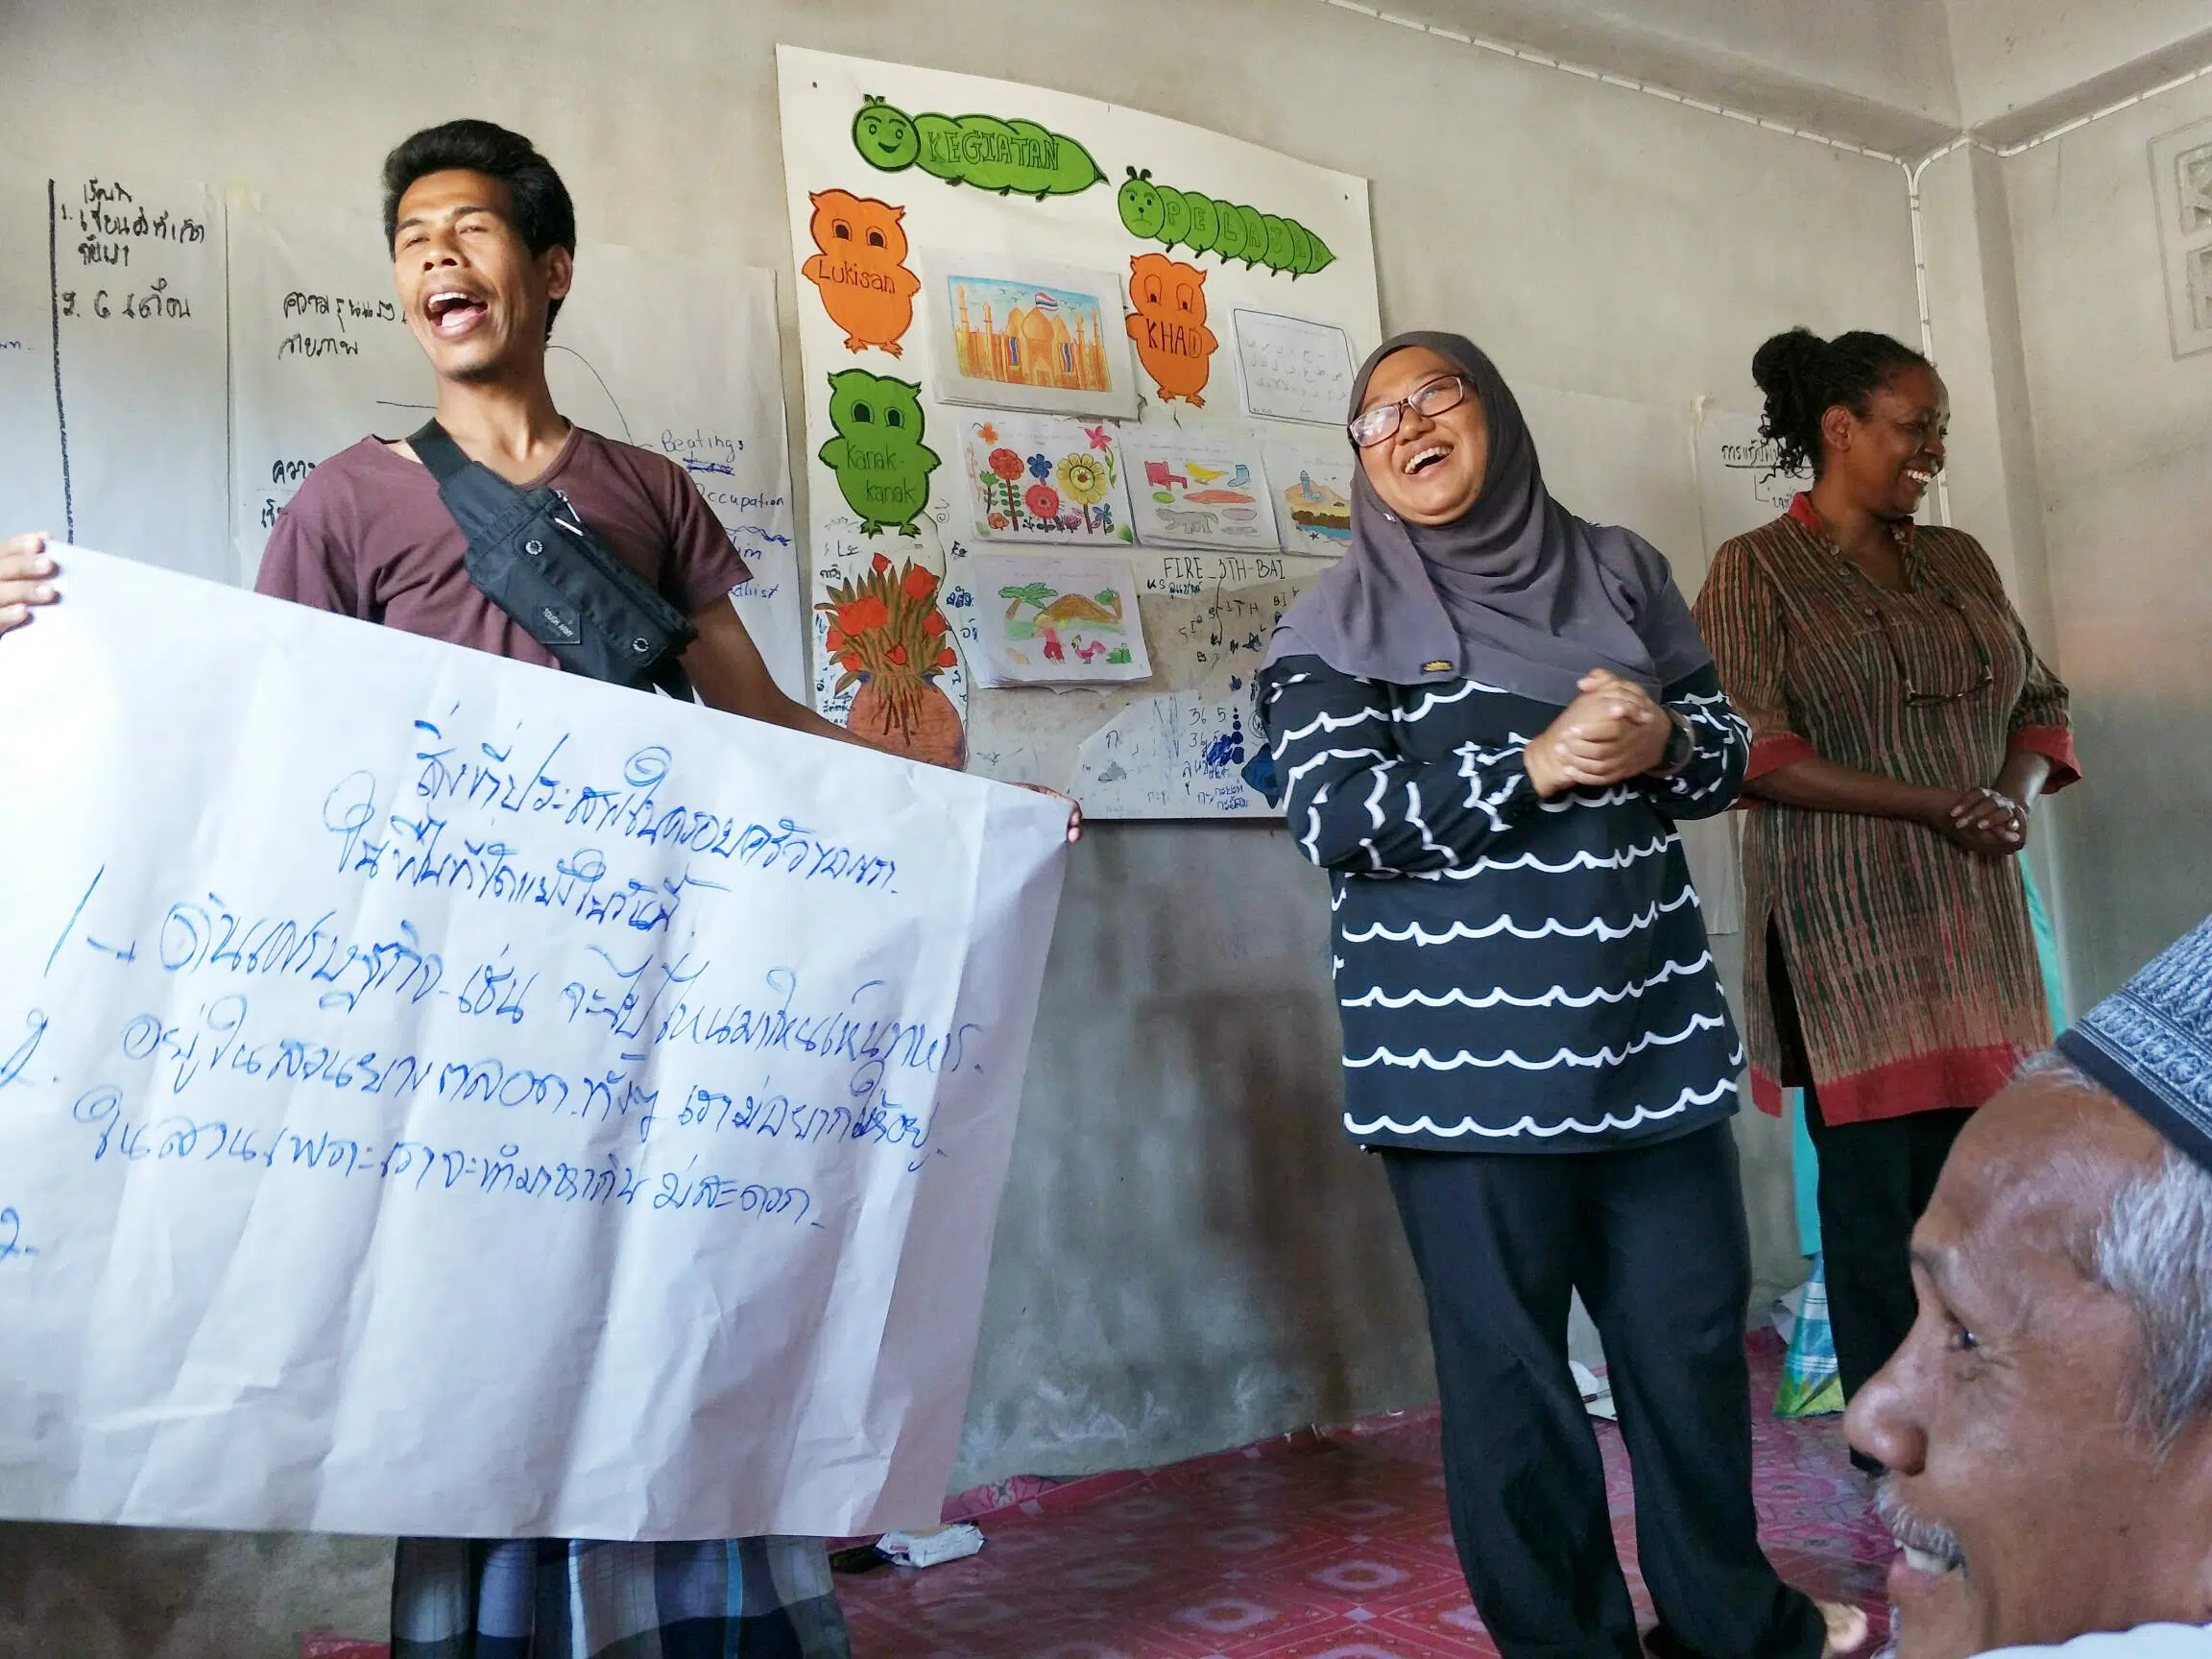 Двоє людей співають і посміхаються, тримаючи табличку з тайськими літерами під час навчання в південному Таїланді. Співробітники НП посміхаються поруч із двома людьми.